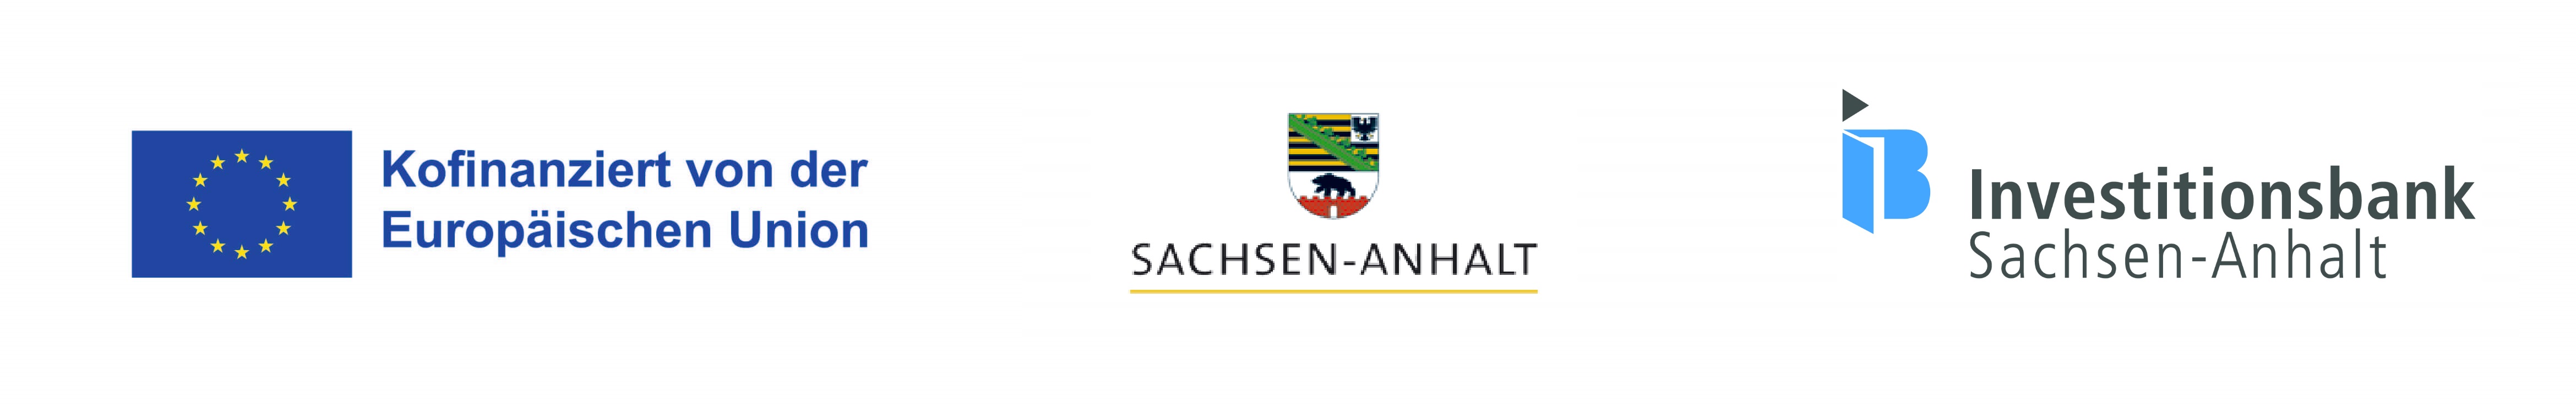 Logos EU, Sachsen-Anhalt, IB Sachsen-Anhalt